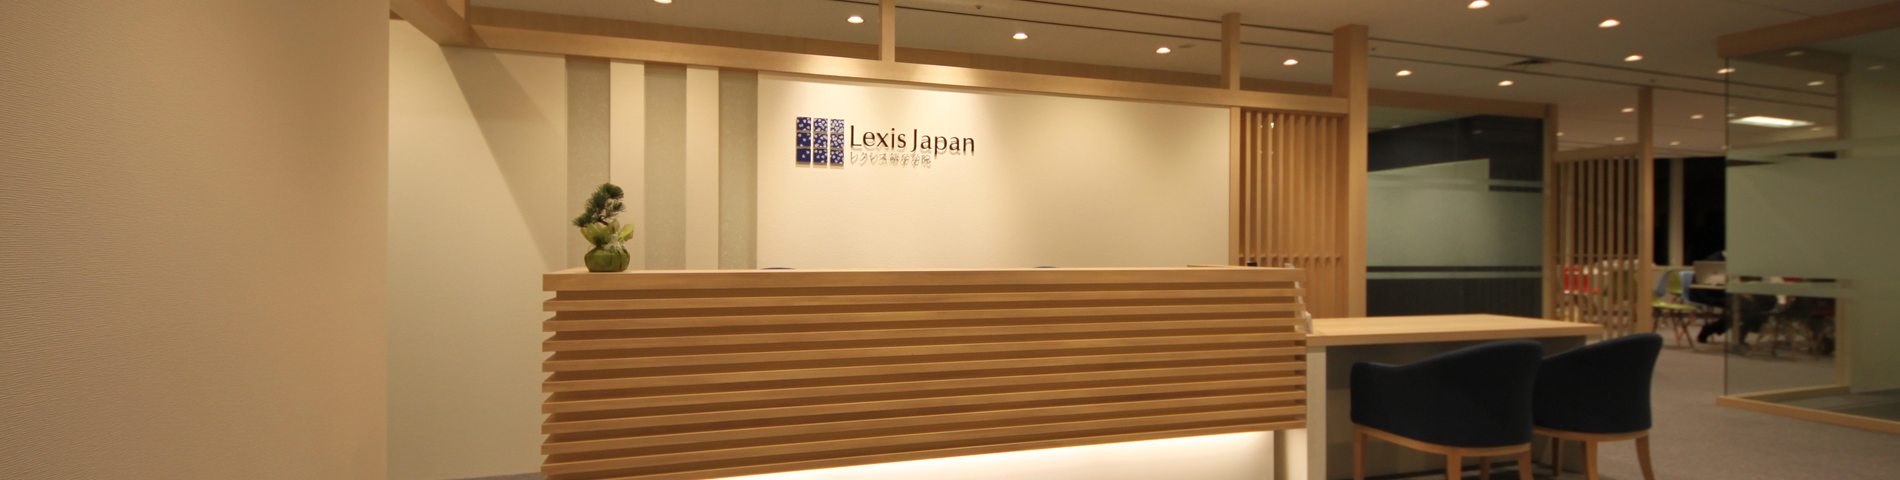 Obrázok školy Lexis Japan – 1